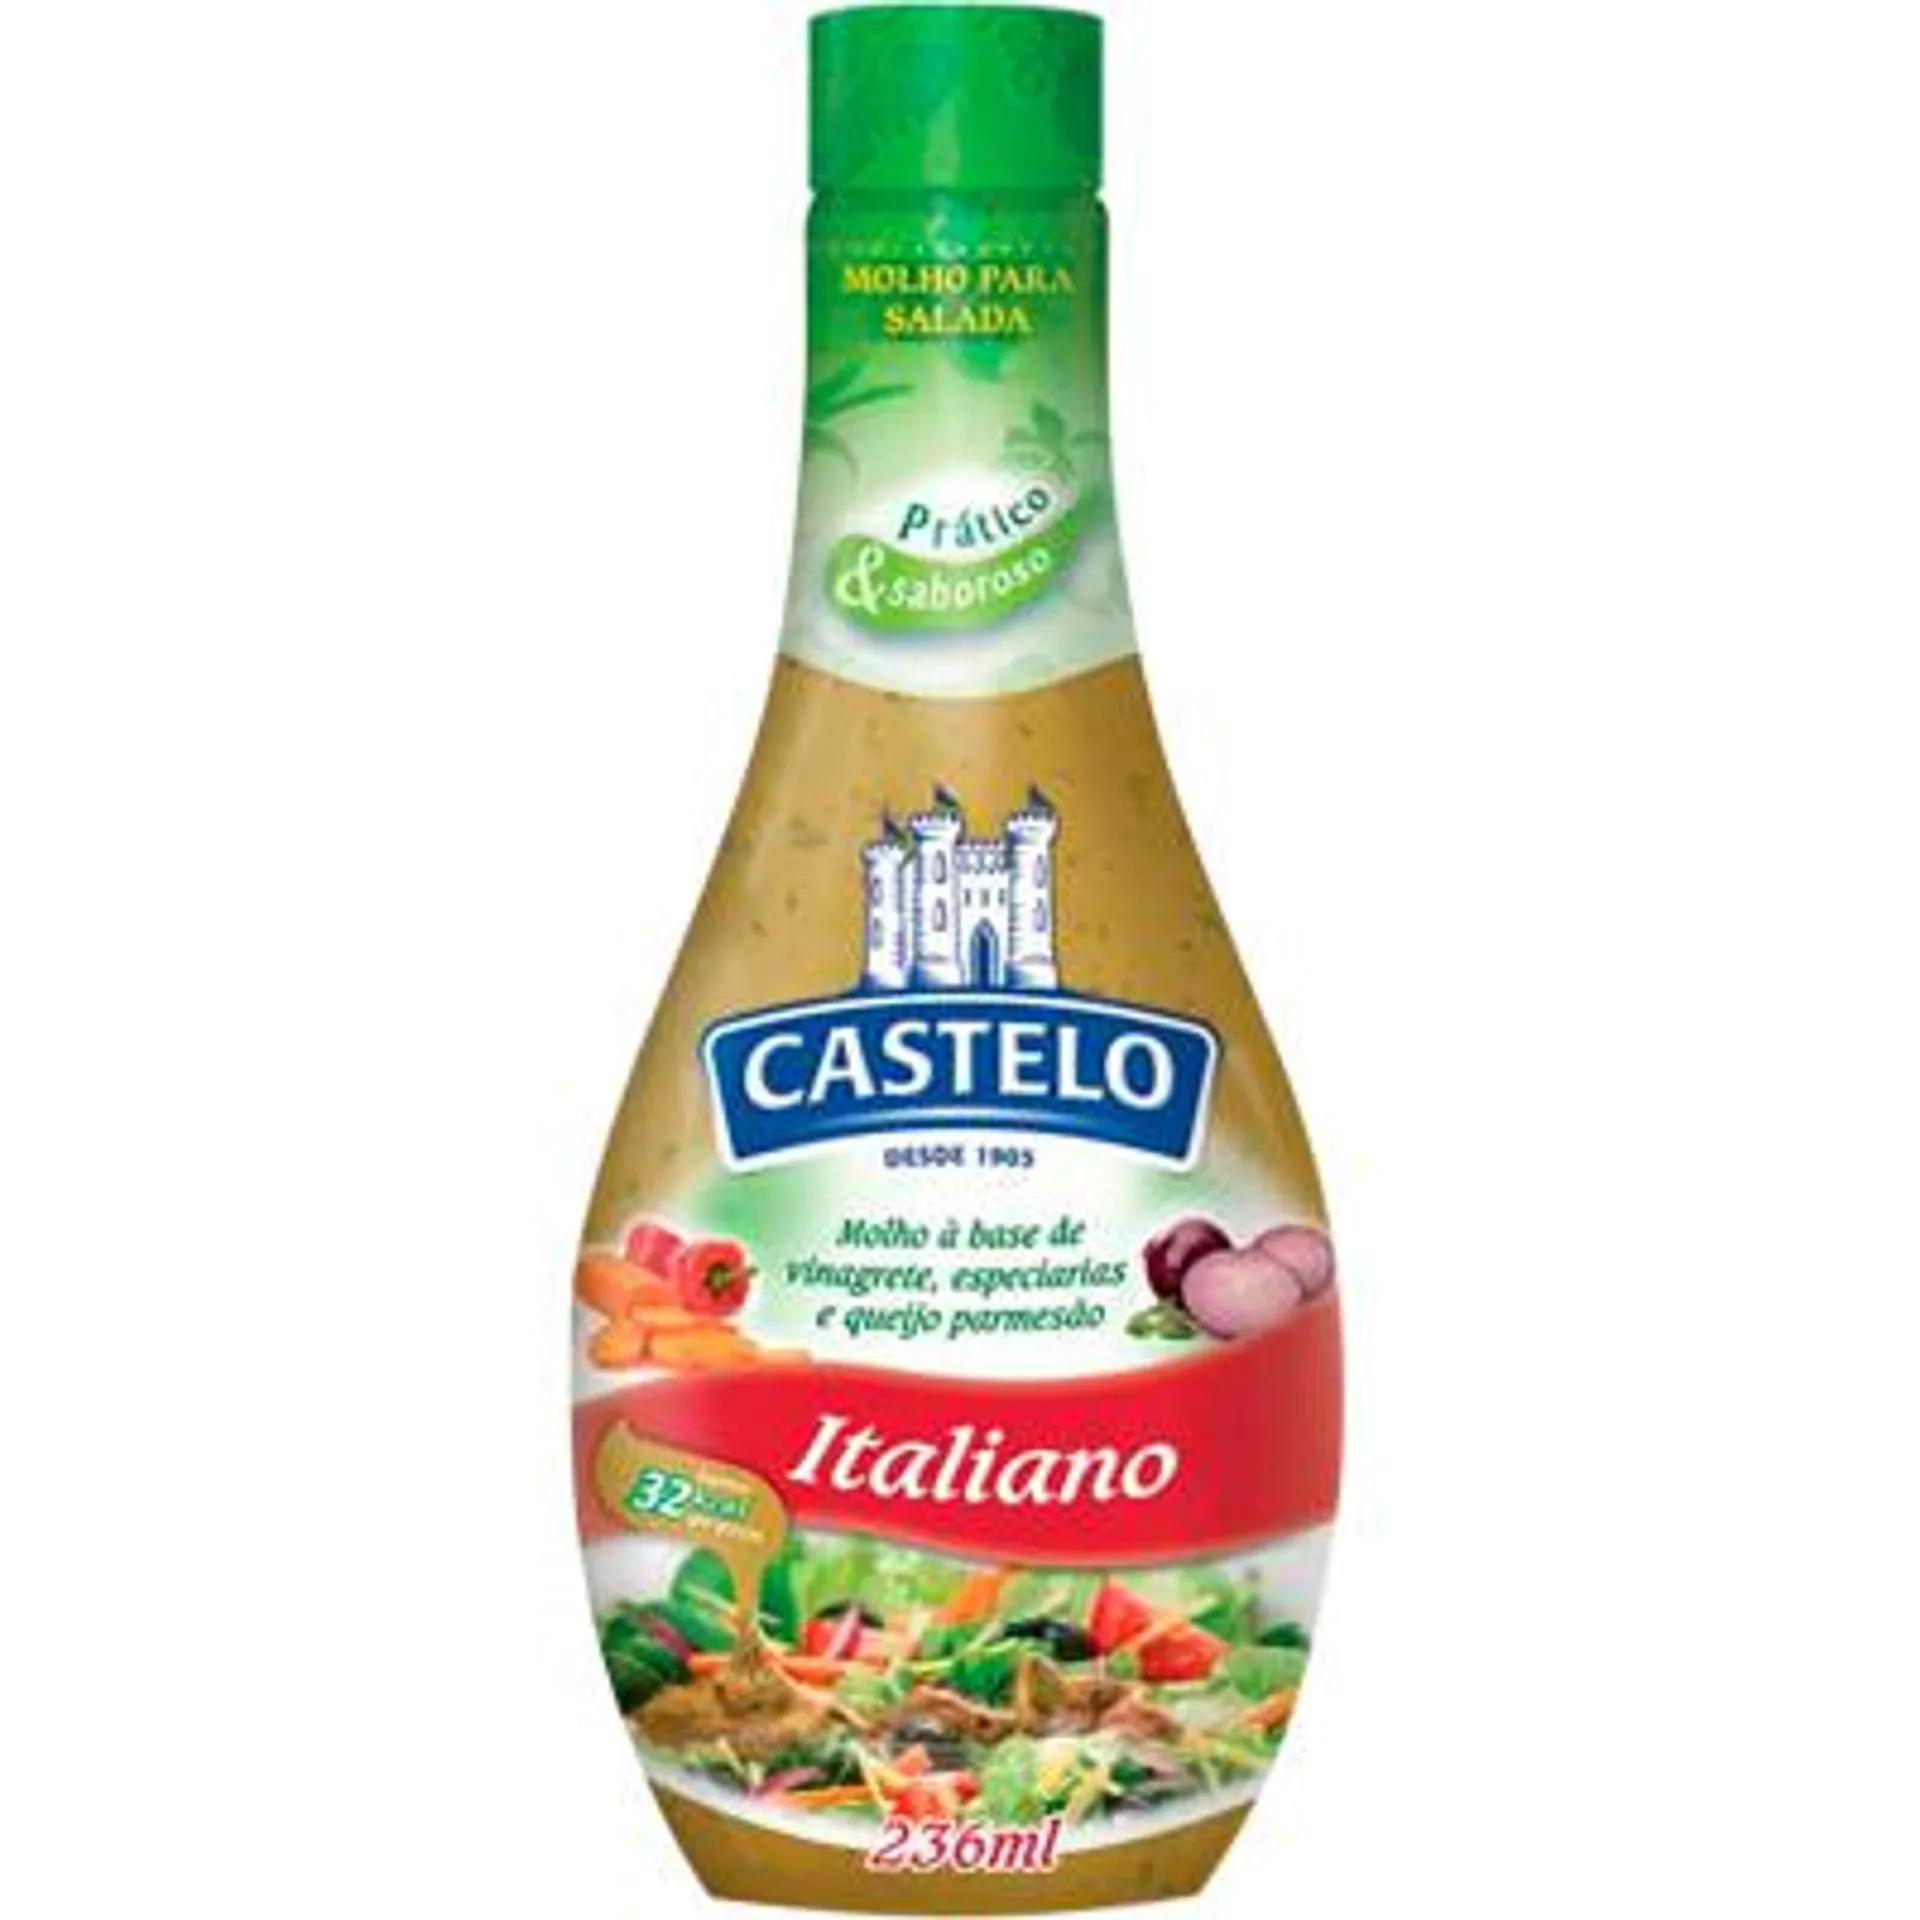 Molho para Salada Italiano Frasco 236ml - Castelo